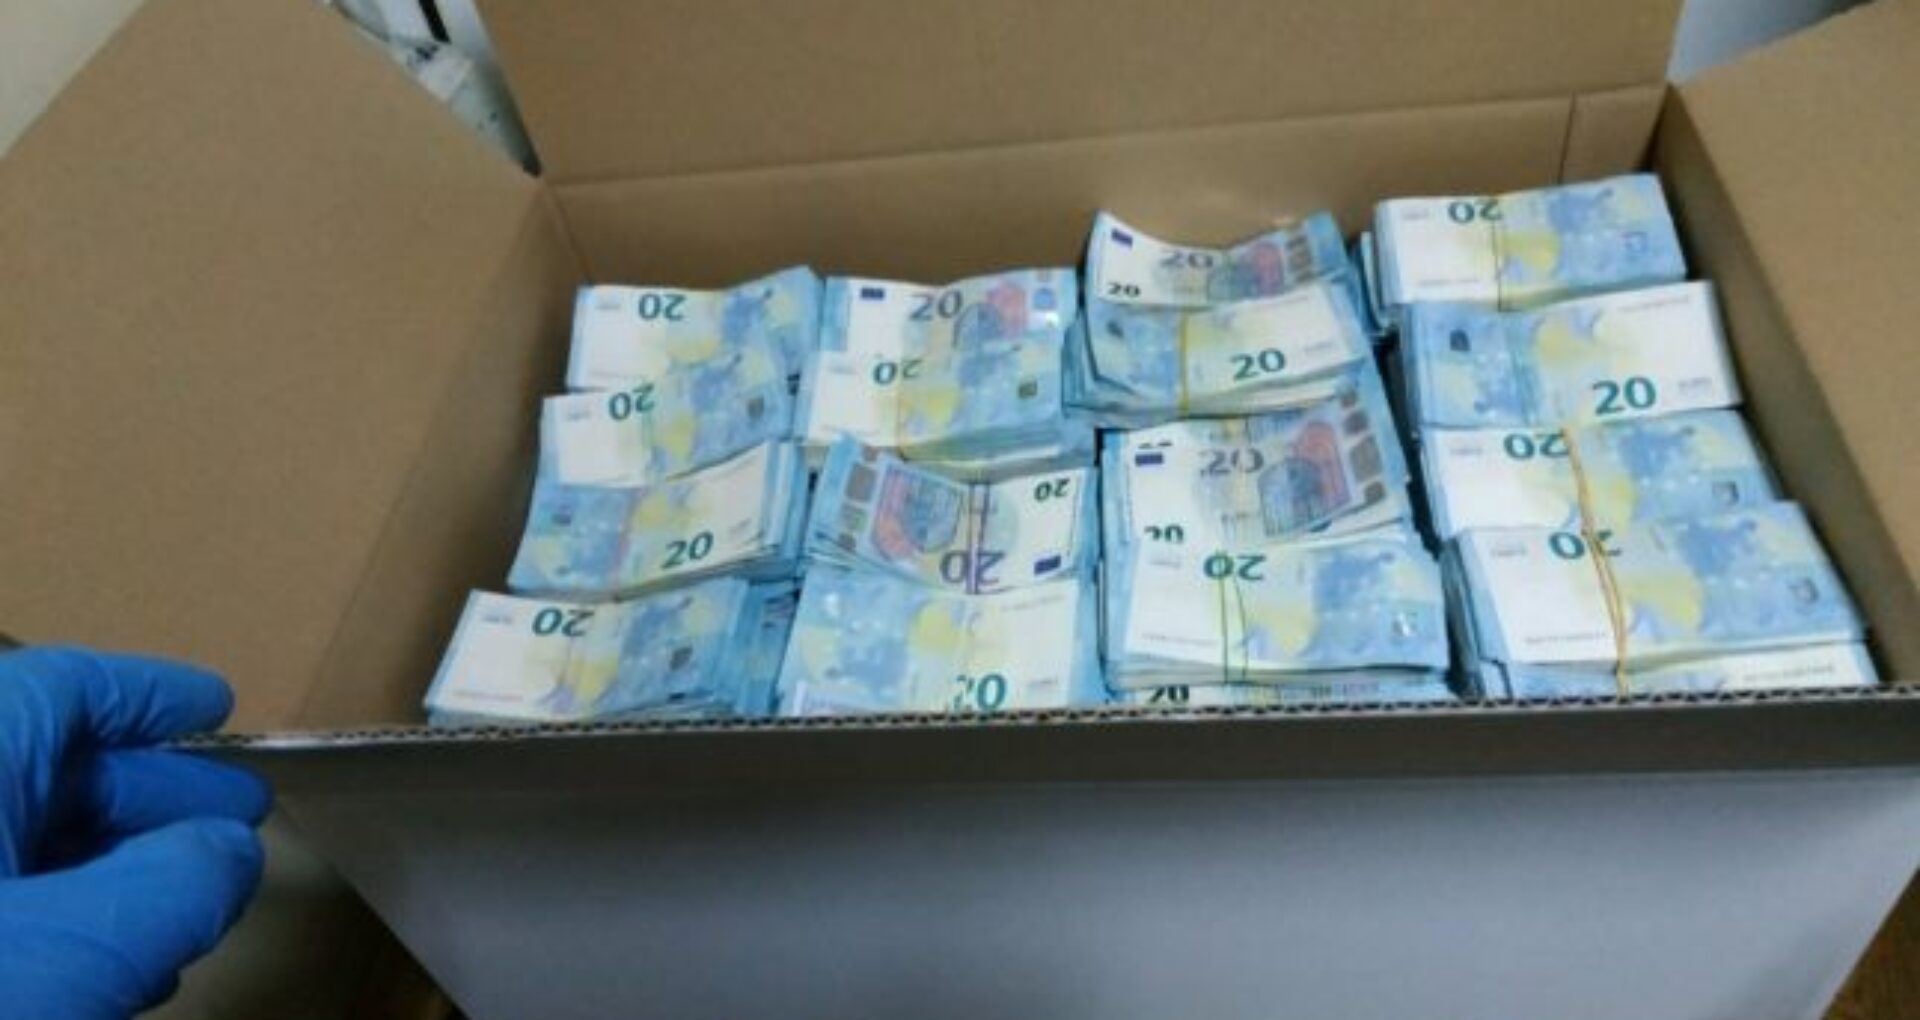 Noi detalii despre cum au trecut nestingherit prin vama românească pachetele cu cei 1,5 milioane de euro: „Lucrătorul vamal nu a fost interesat să verifice”